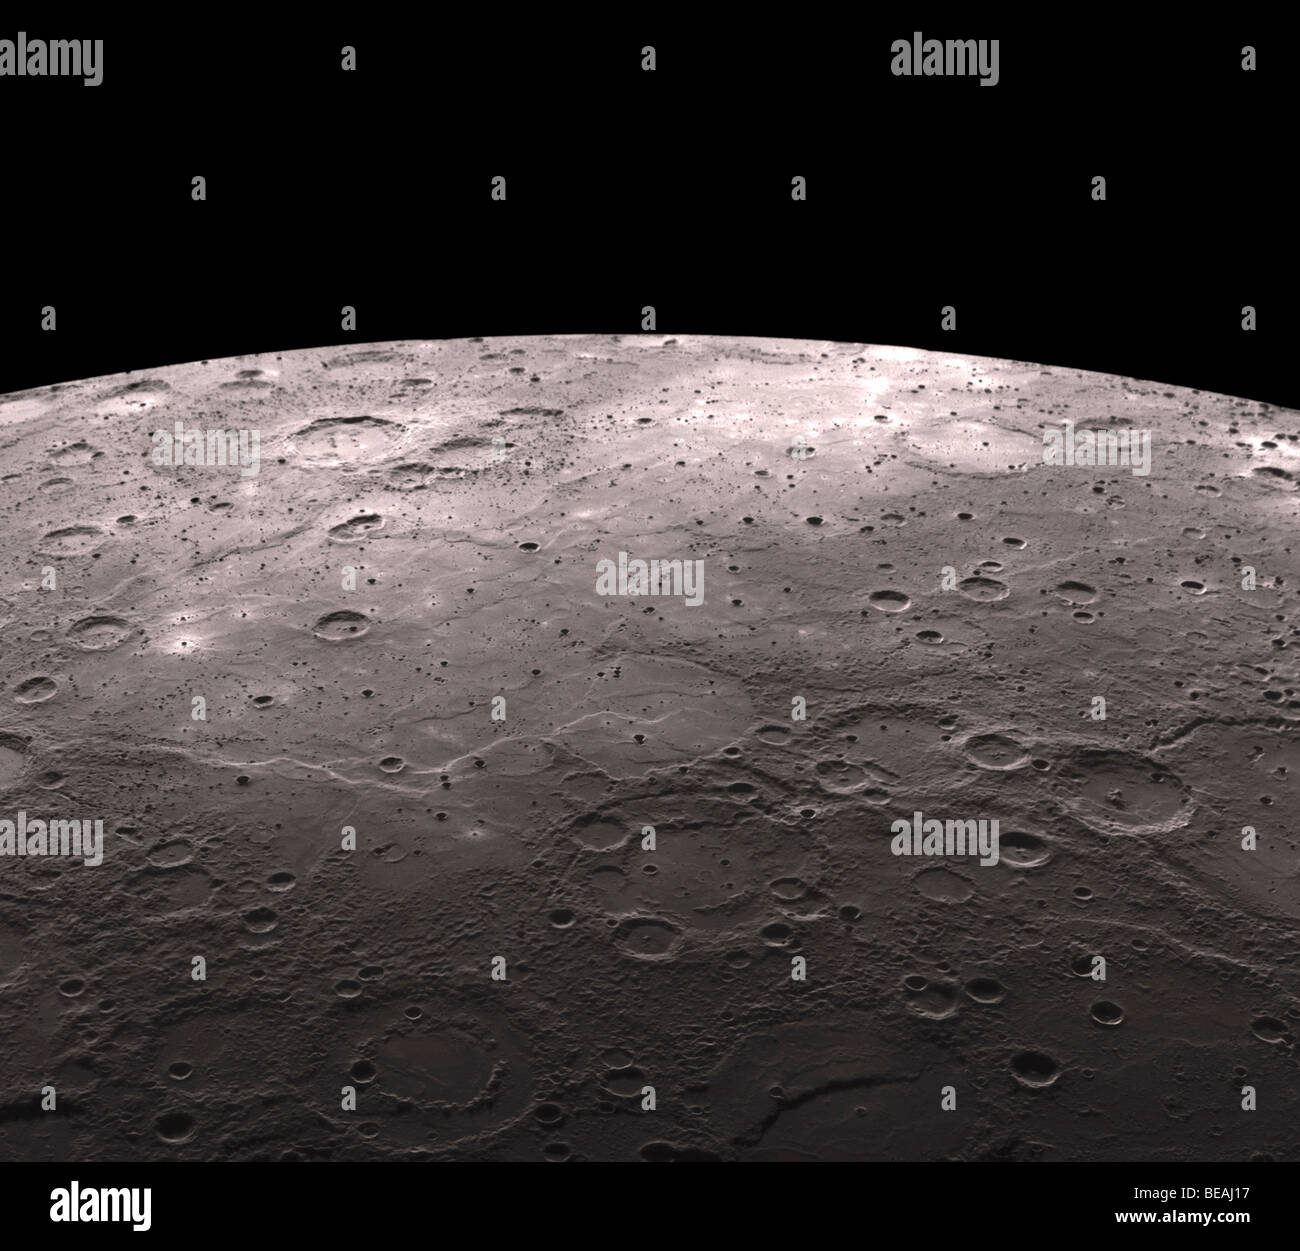 Terreno vulcanico sul mercurio. Ottimizzato e la versione avanzata di un originale immagine della NASA. Credit NASA Foto Stock